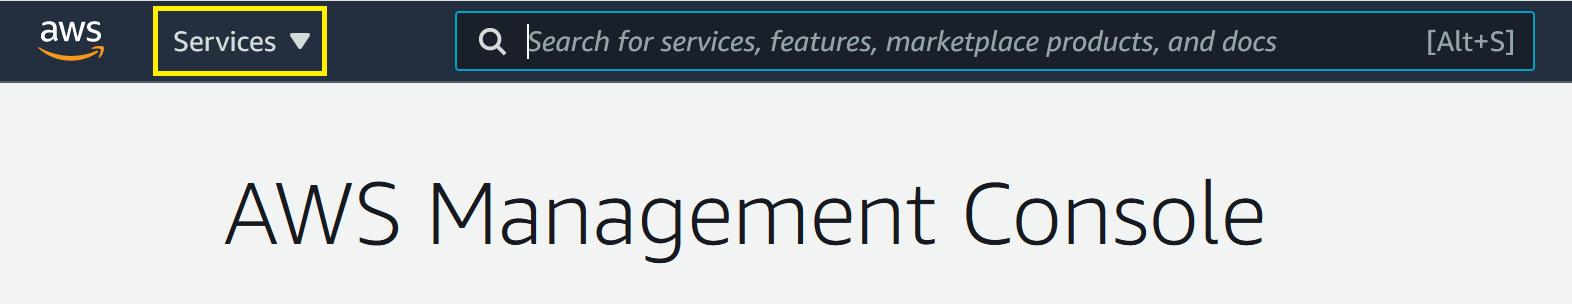 AWS Management Console showing services drop-down menu.